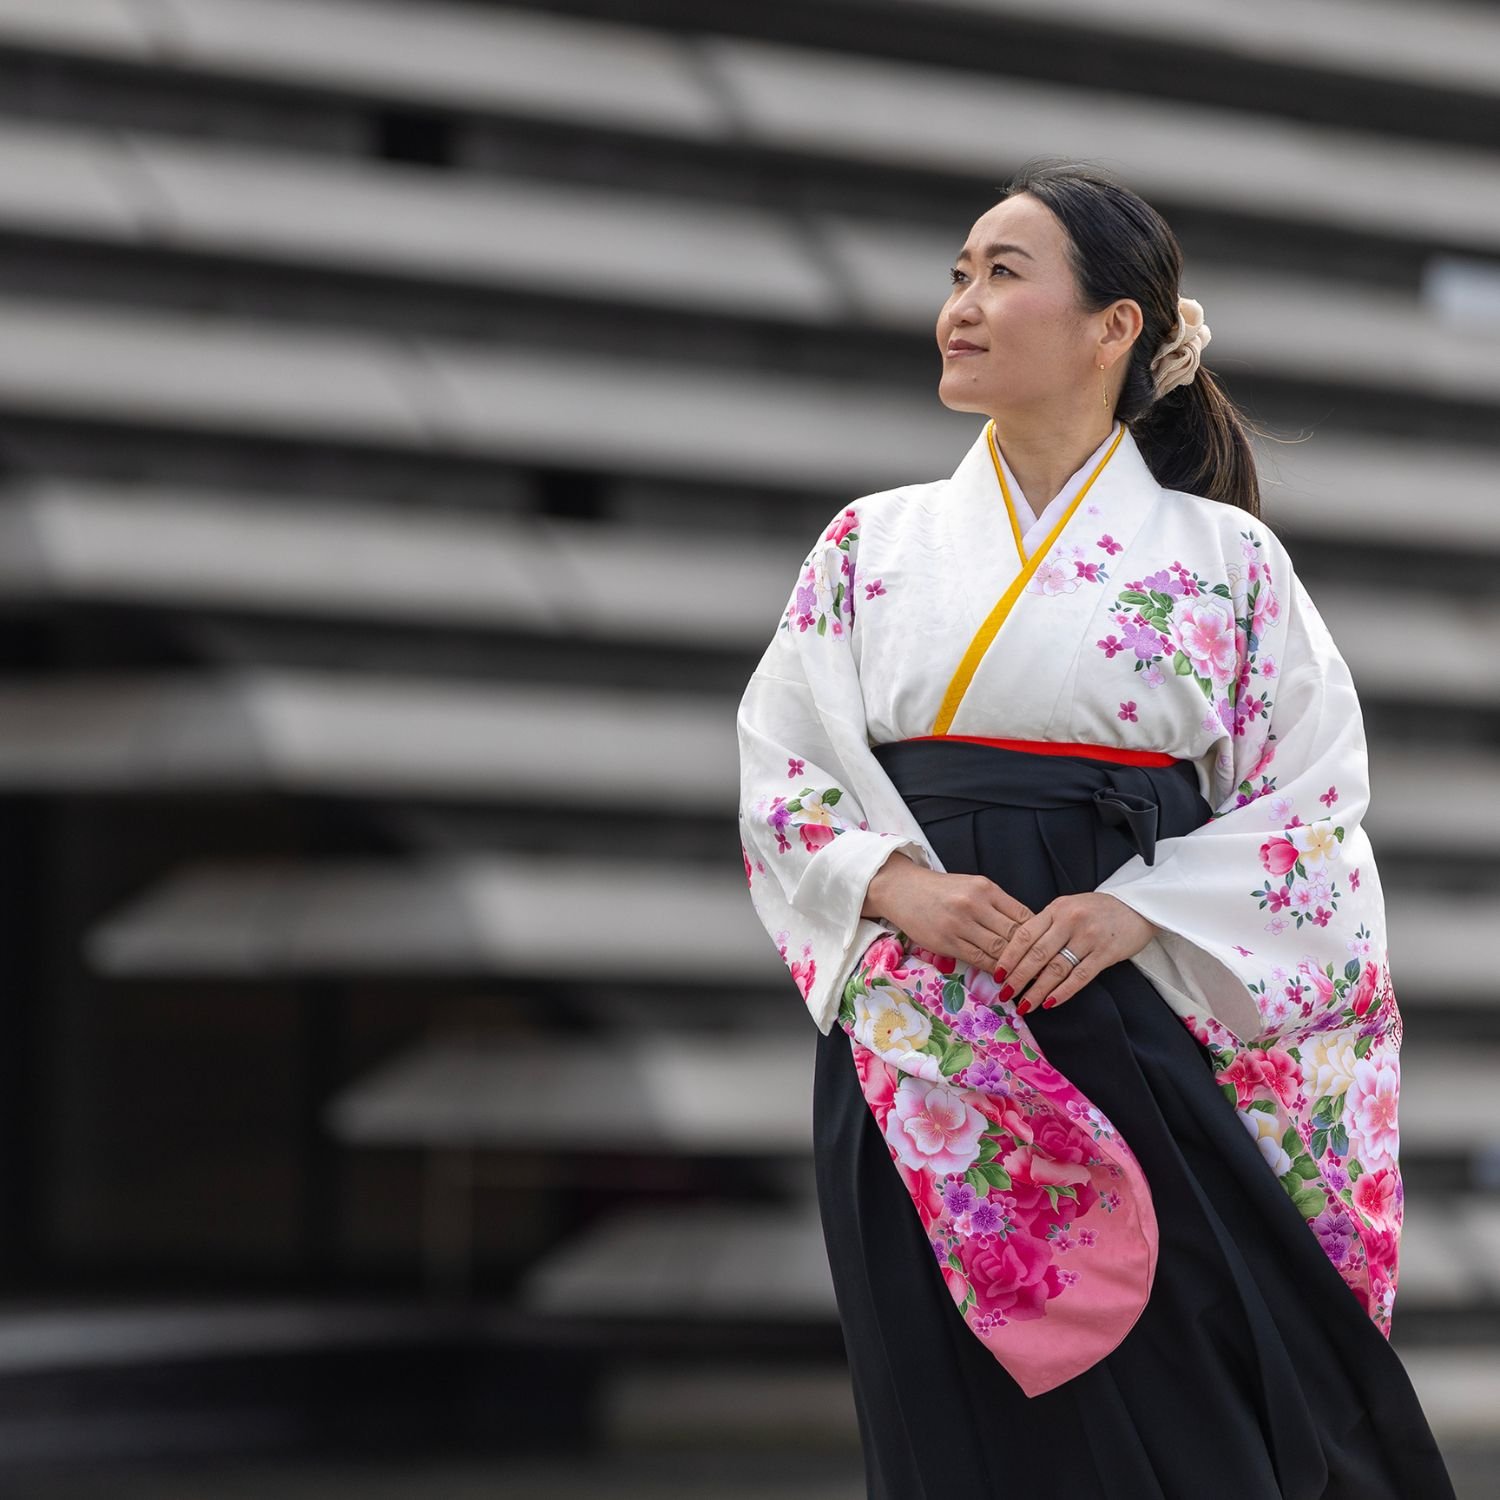 kimono-kyoto-to-catwalk-v-and-a-dundee.jpg